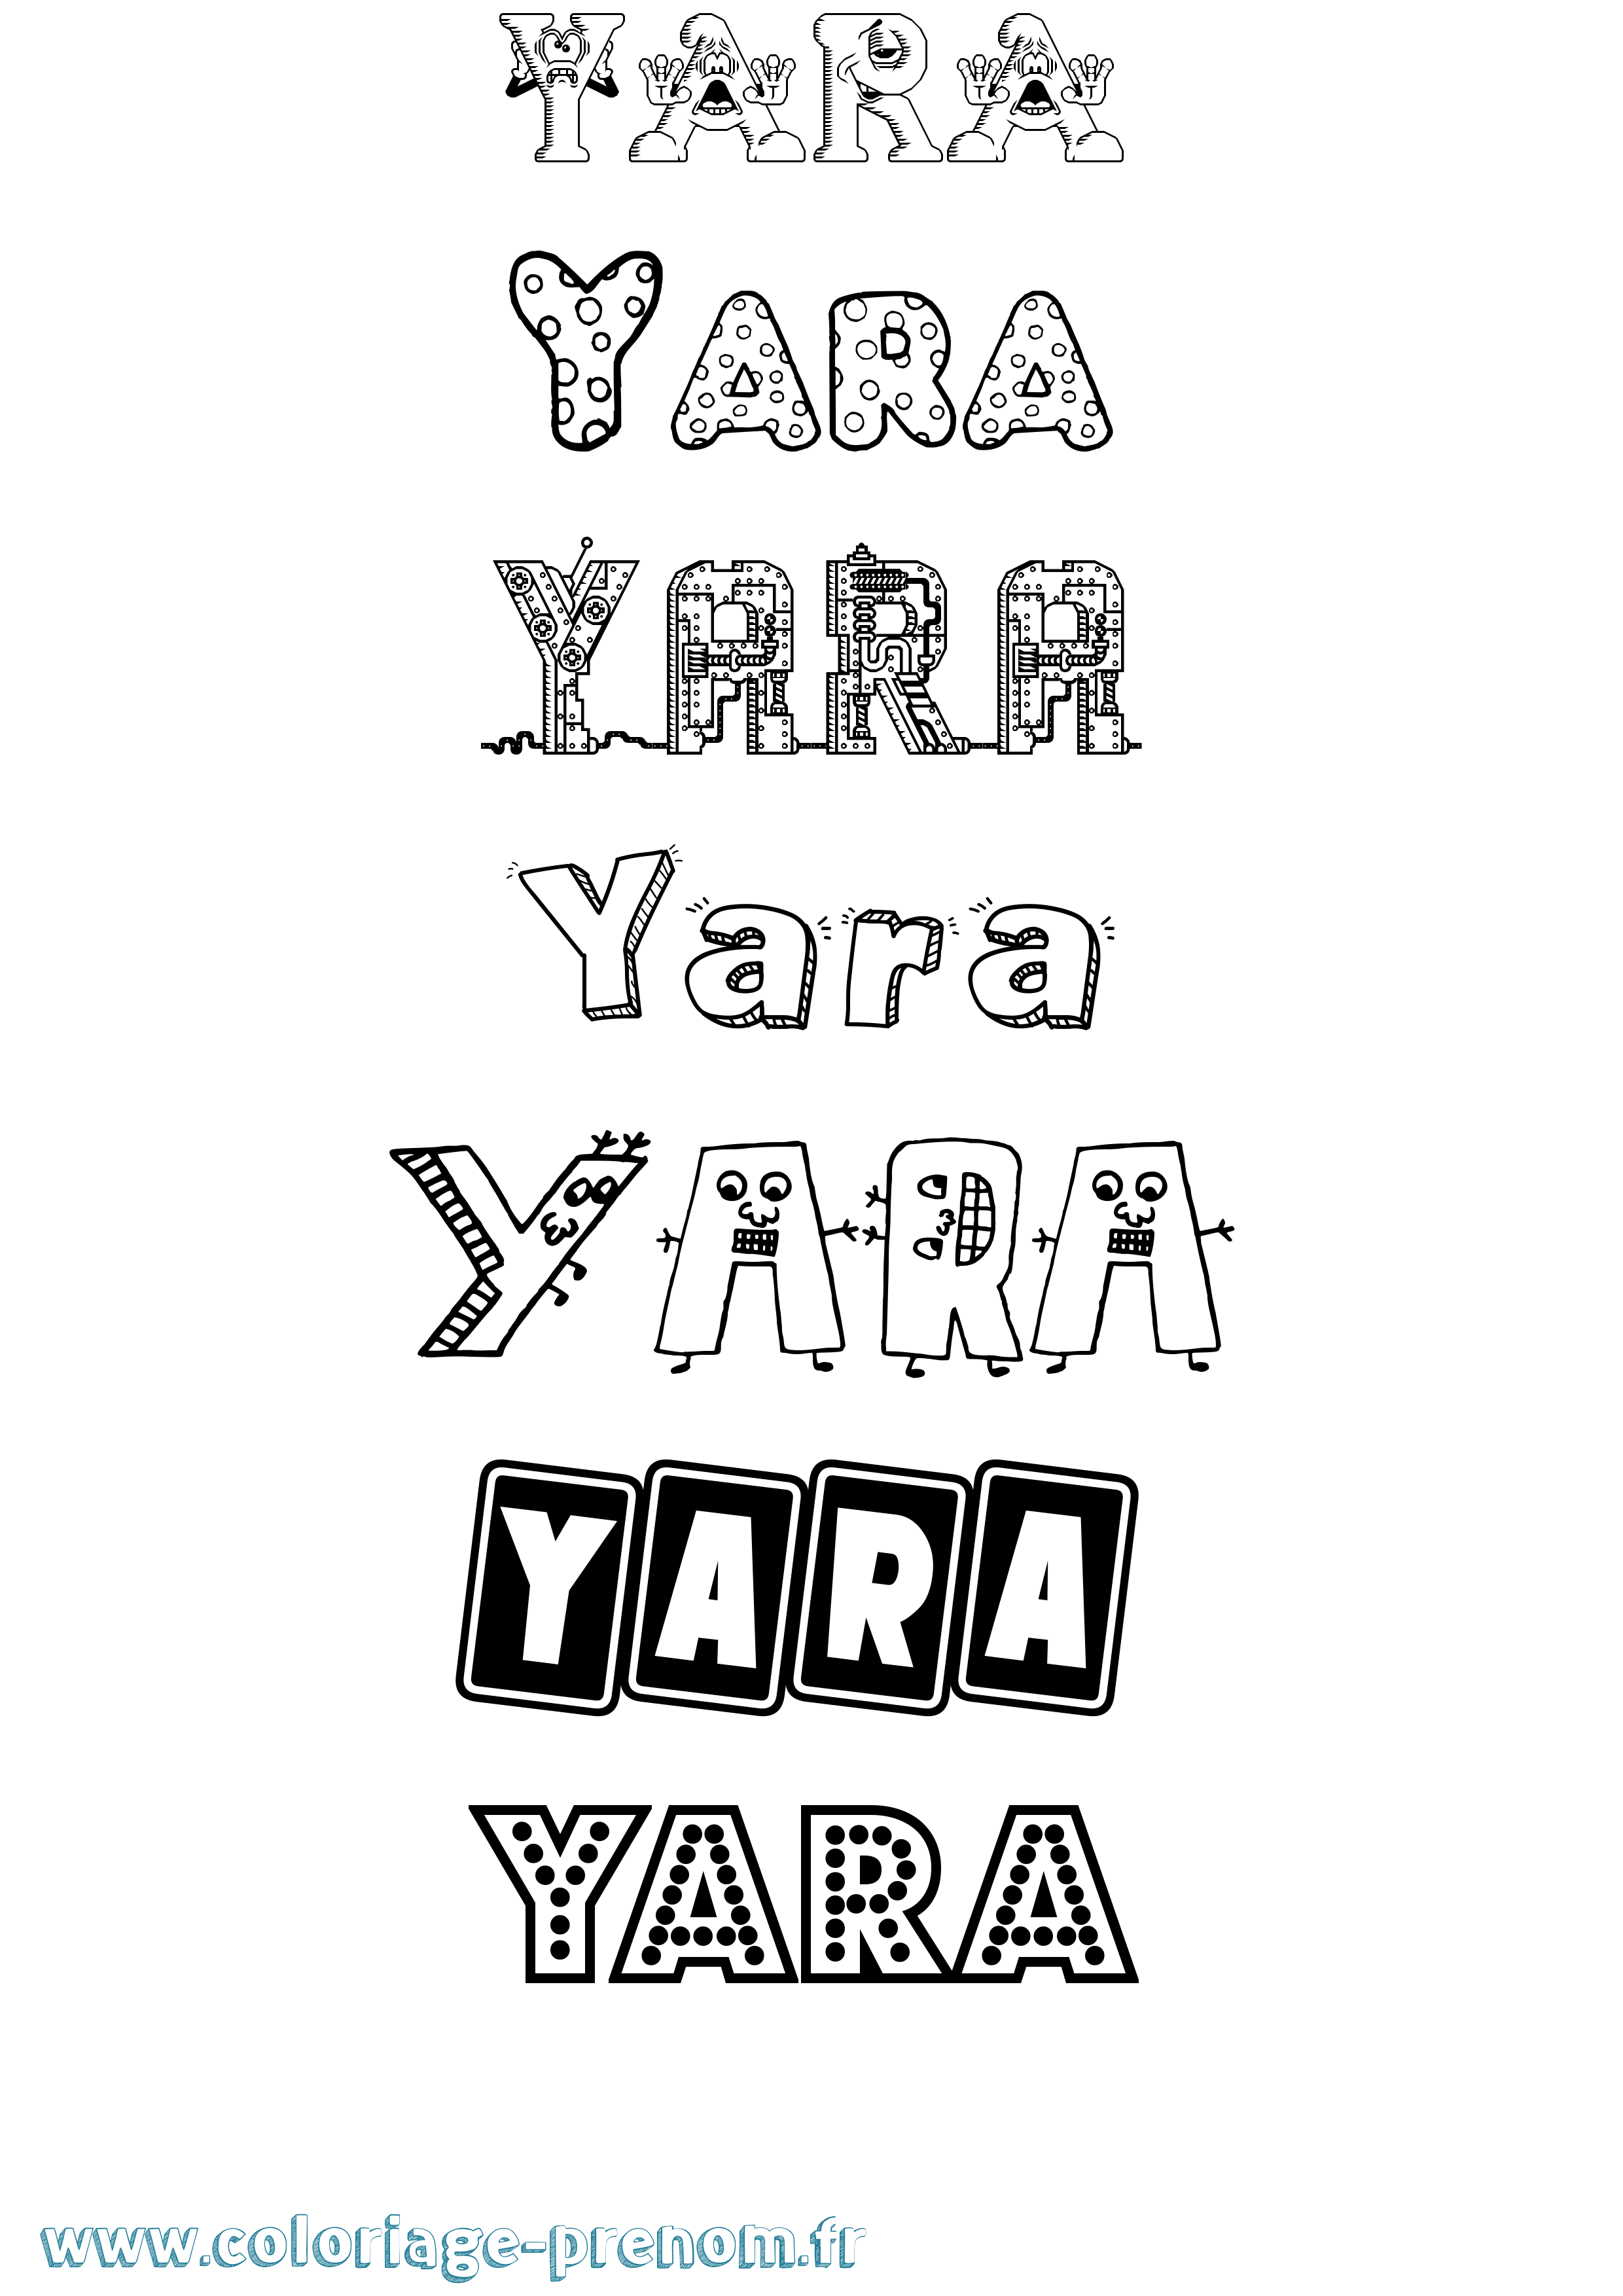 Coloriage prénom Yara Fun